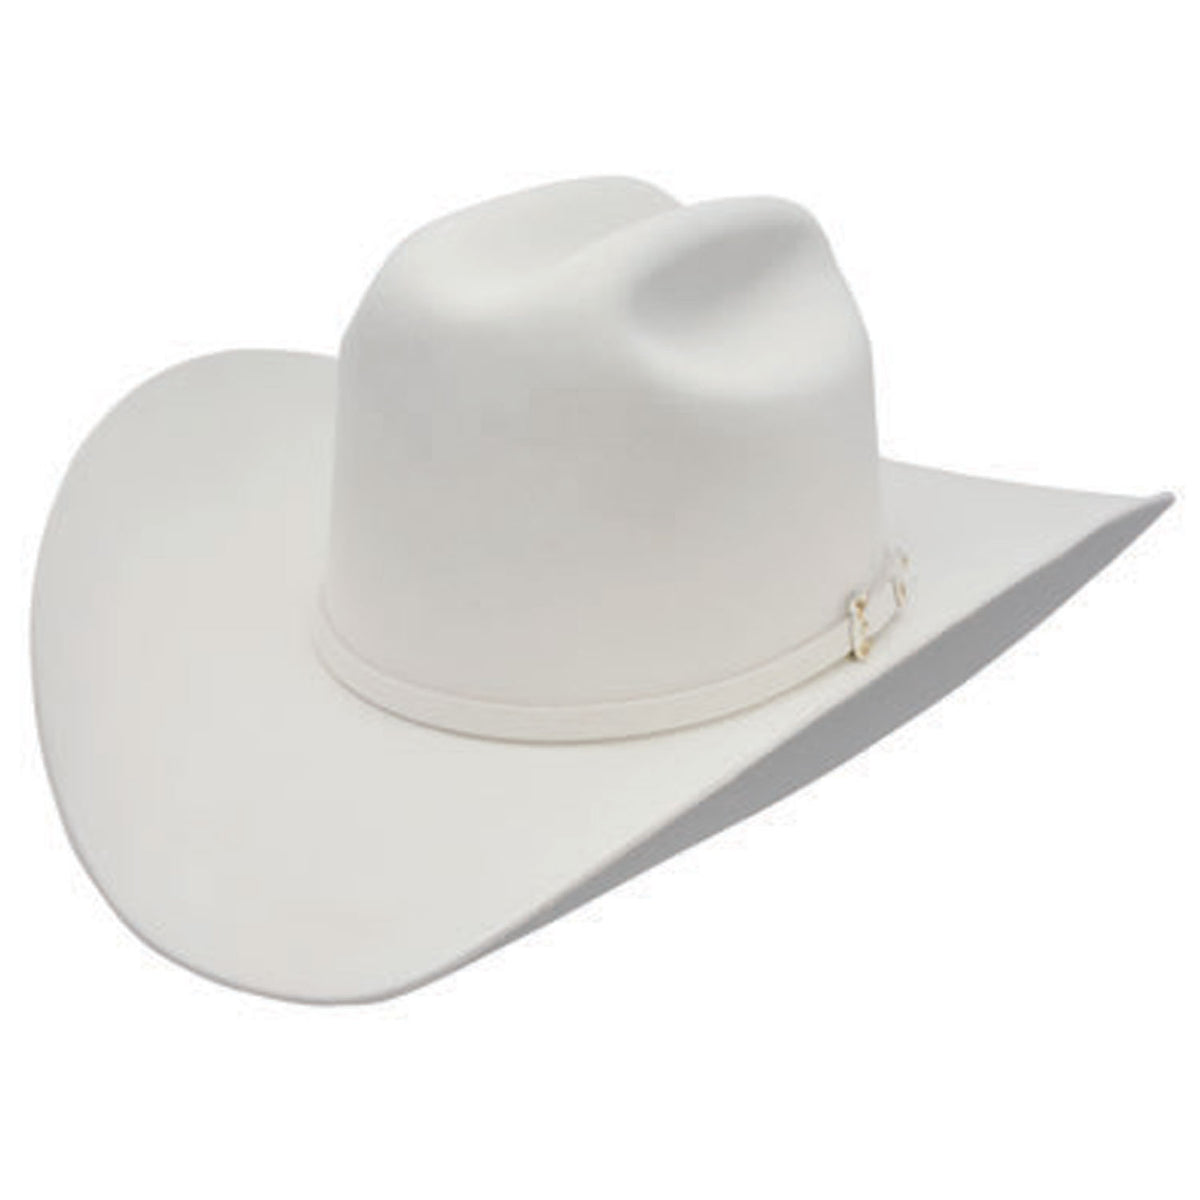 Stetson El Patron 30X Premier Cowboy Hat